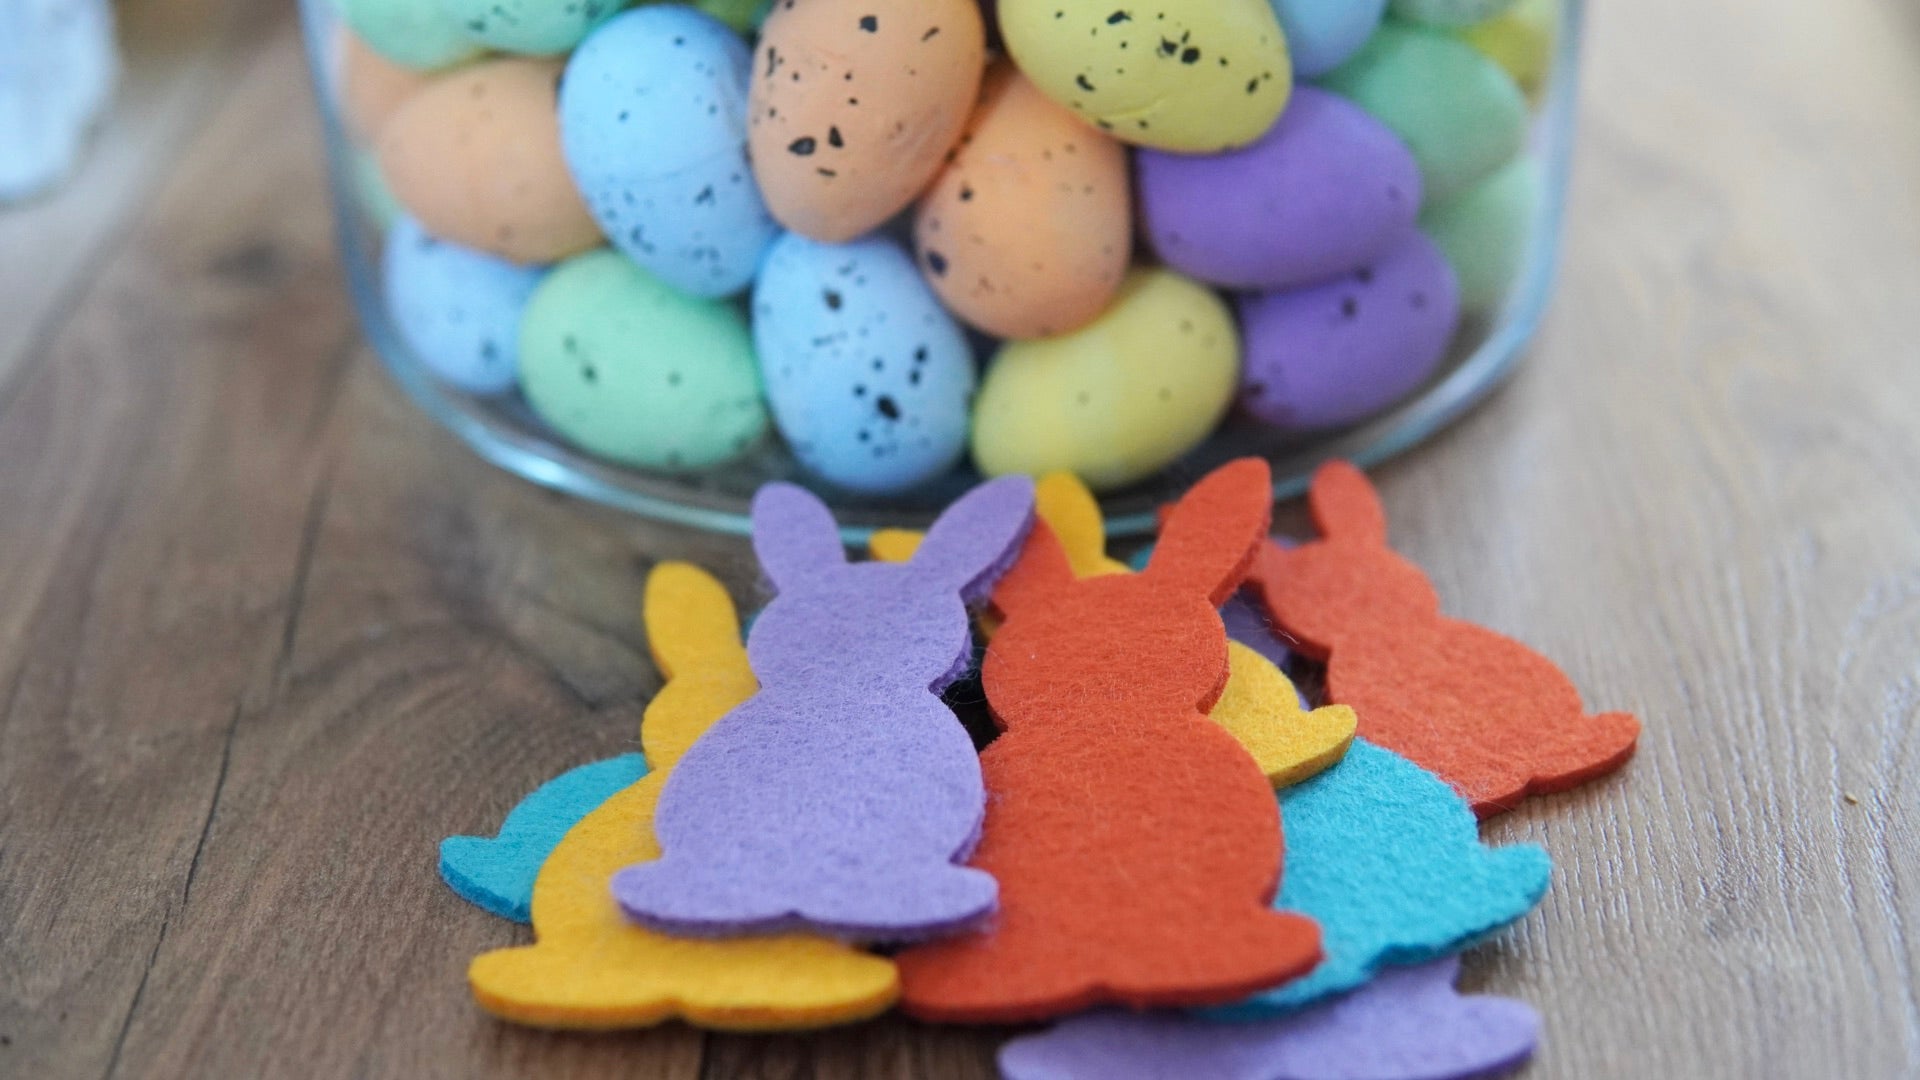 Easter bunnies made of felt